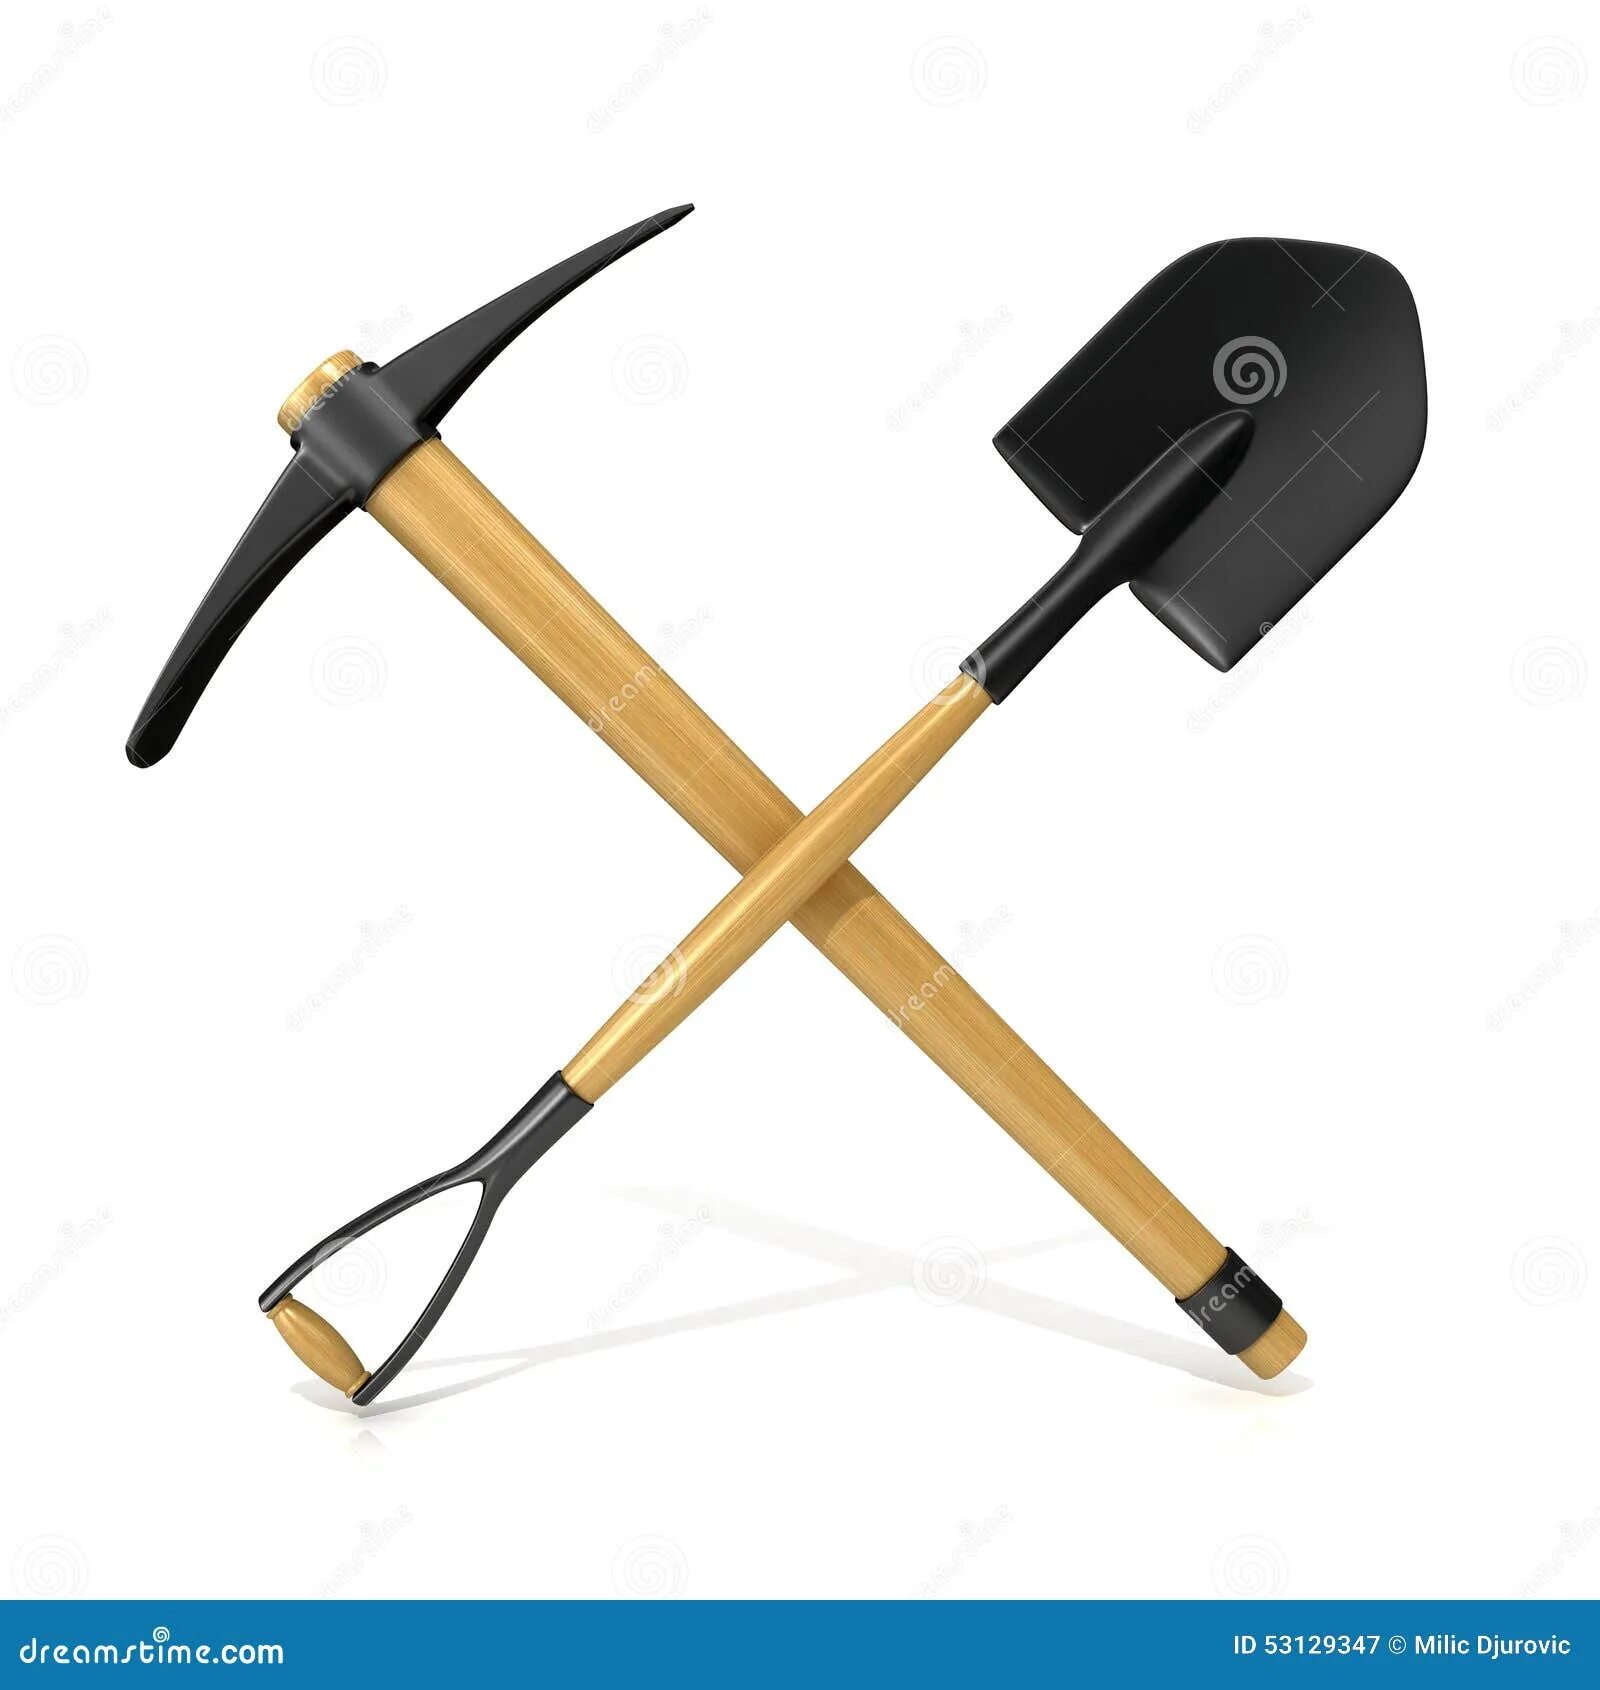 Кирка и лопата. Инструменты Шахтера. Скрещенные кирка и лопата. Перекрещенные лопата и кирка.